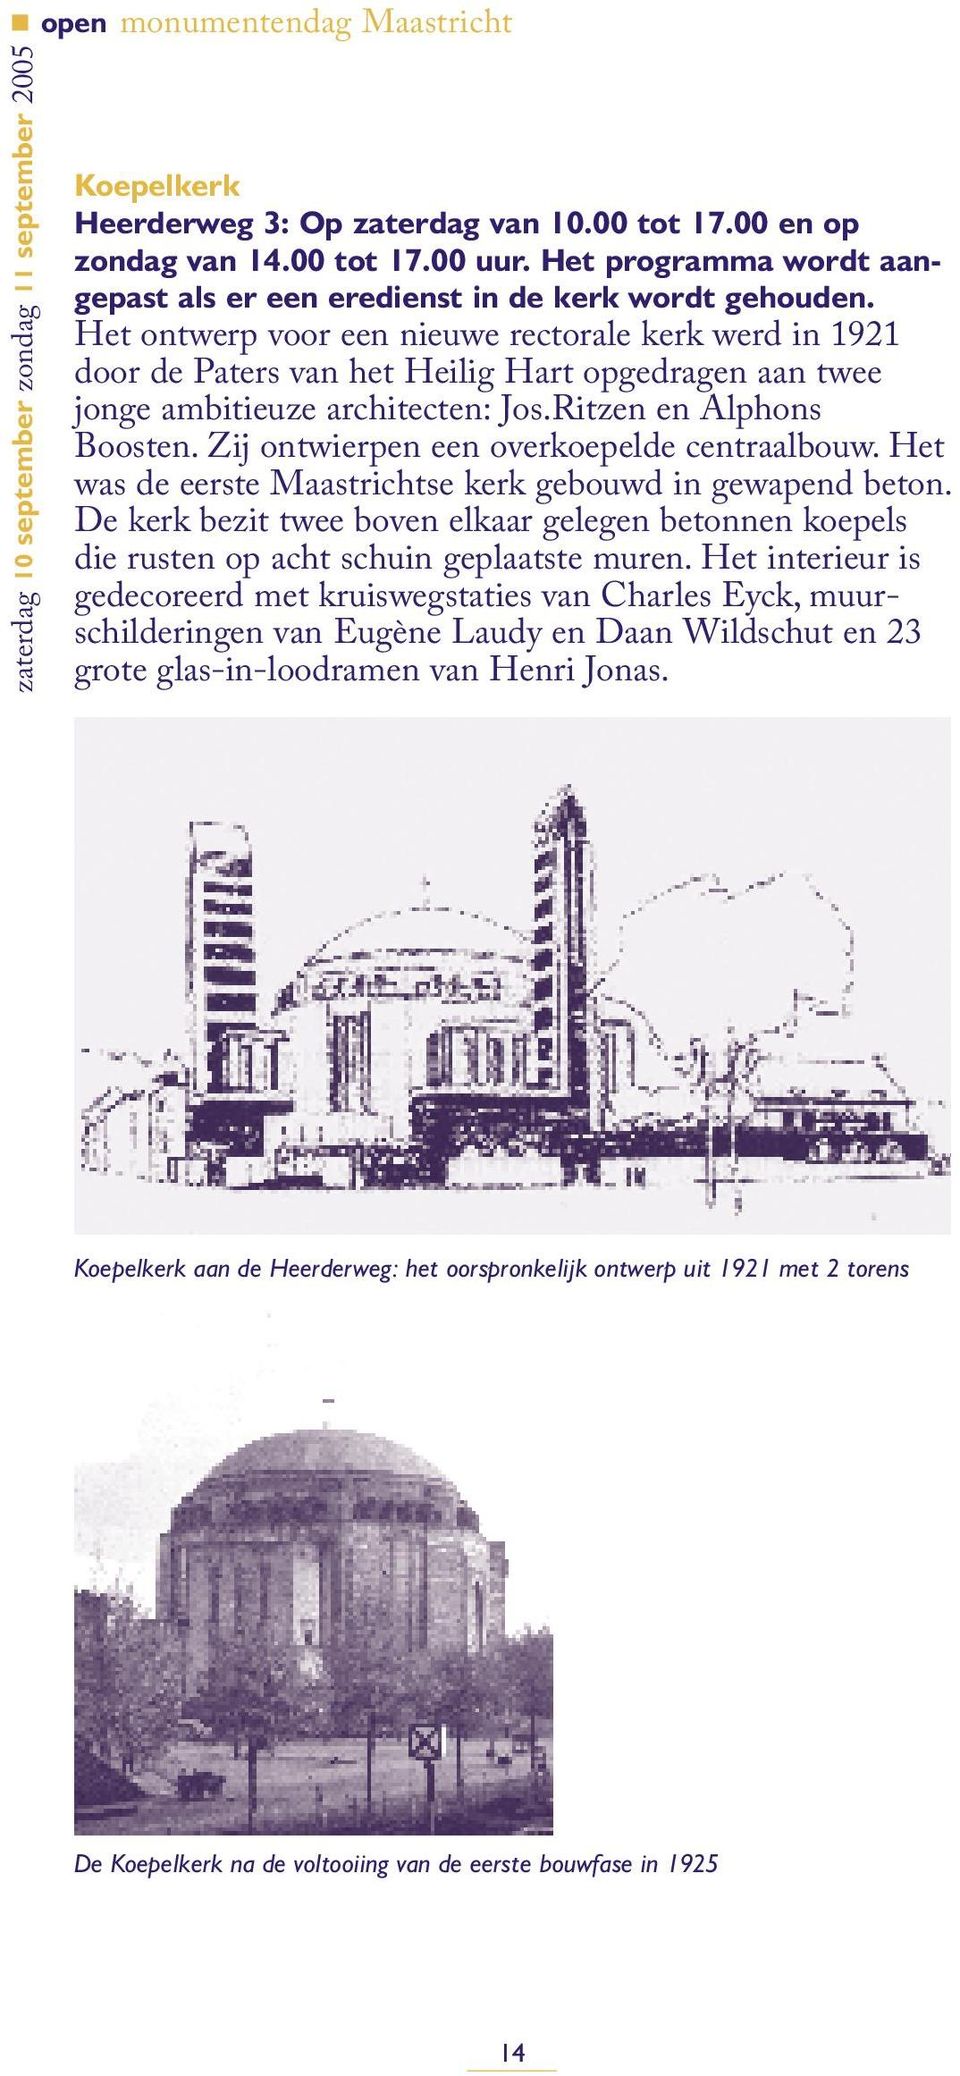 Zij ontwierpen een overkoepelde centraalbouw. Het was de eerste Maastrichtse kerk gebouwd in gewapend beton.